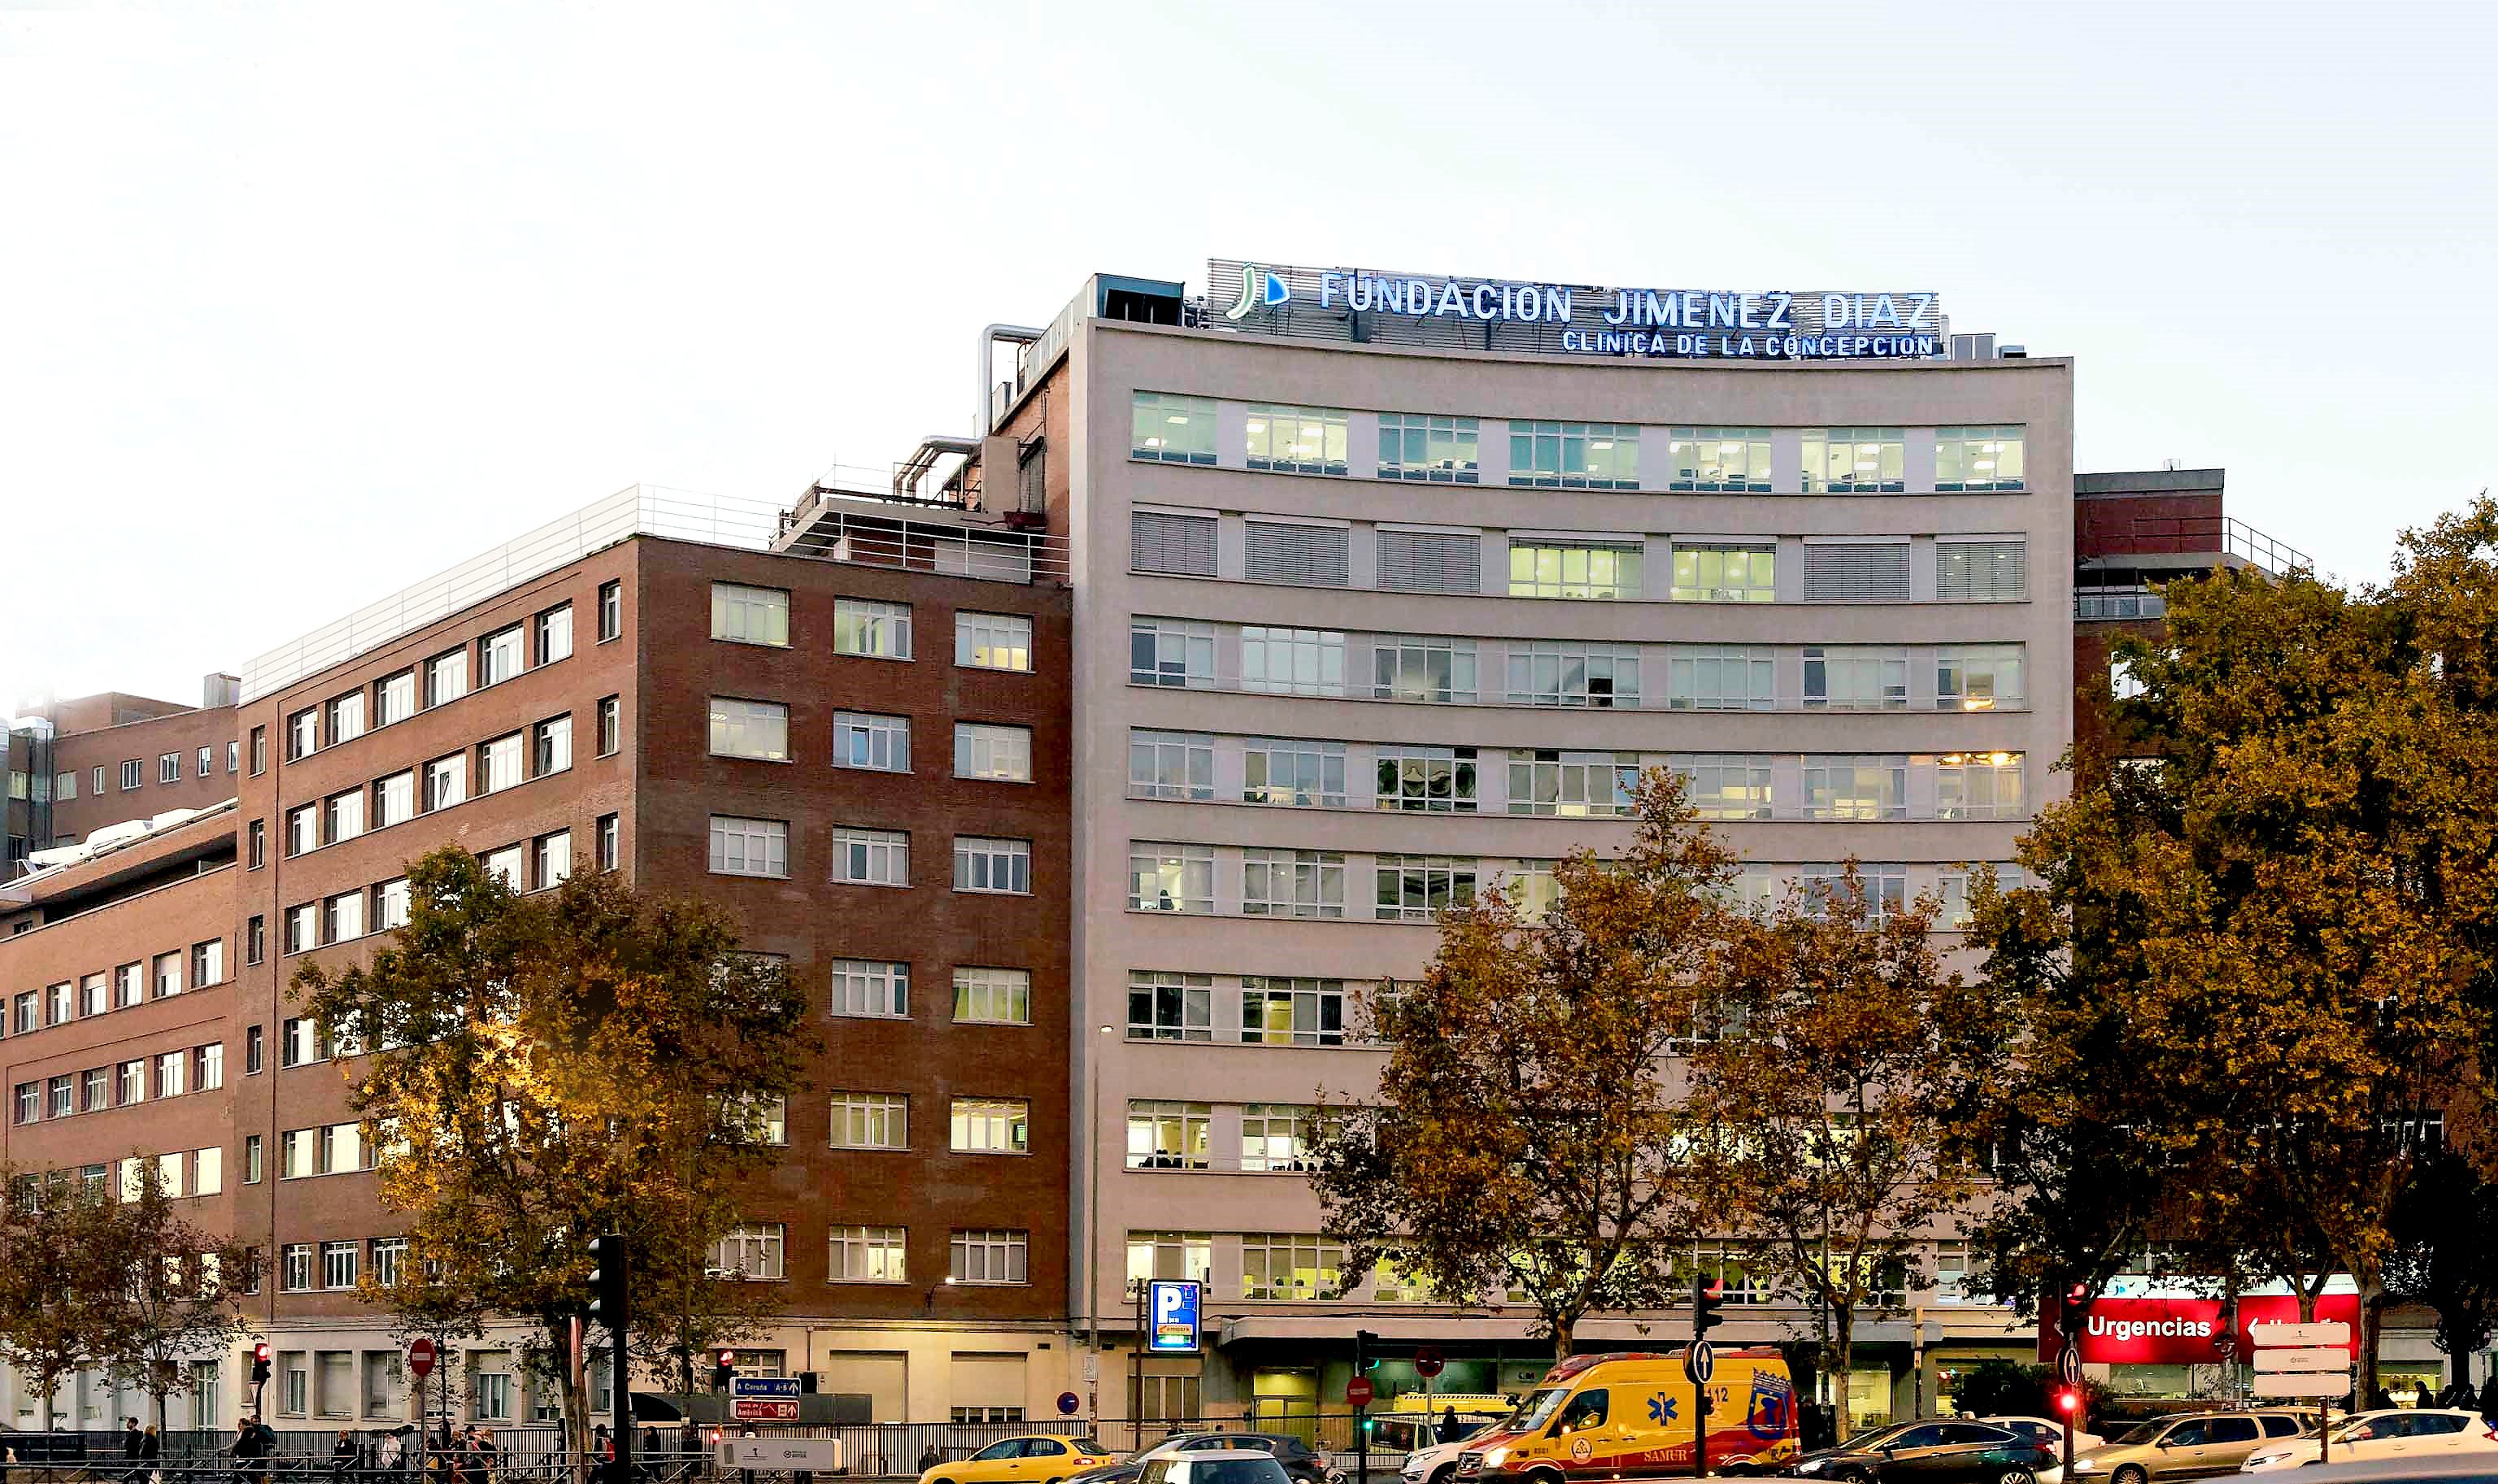 La Fundación Jiménez Díaz destaca por su eficiencia frente al resto de hospitales